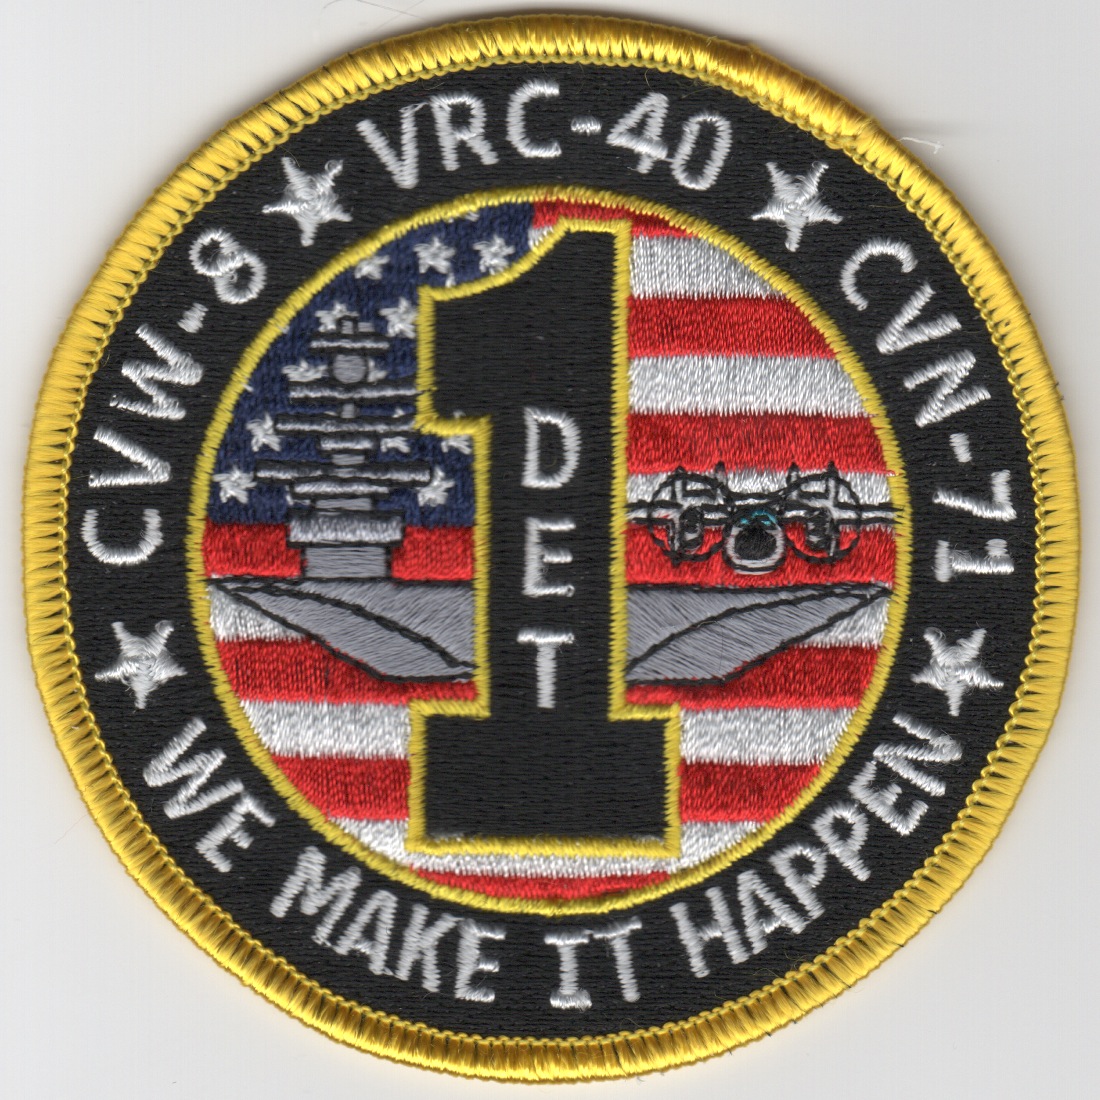 VRC-40 Det-1 'Make It Happen' Patch